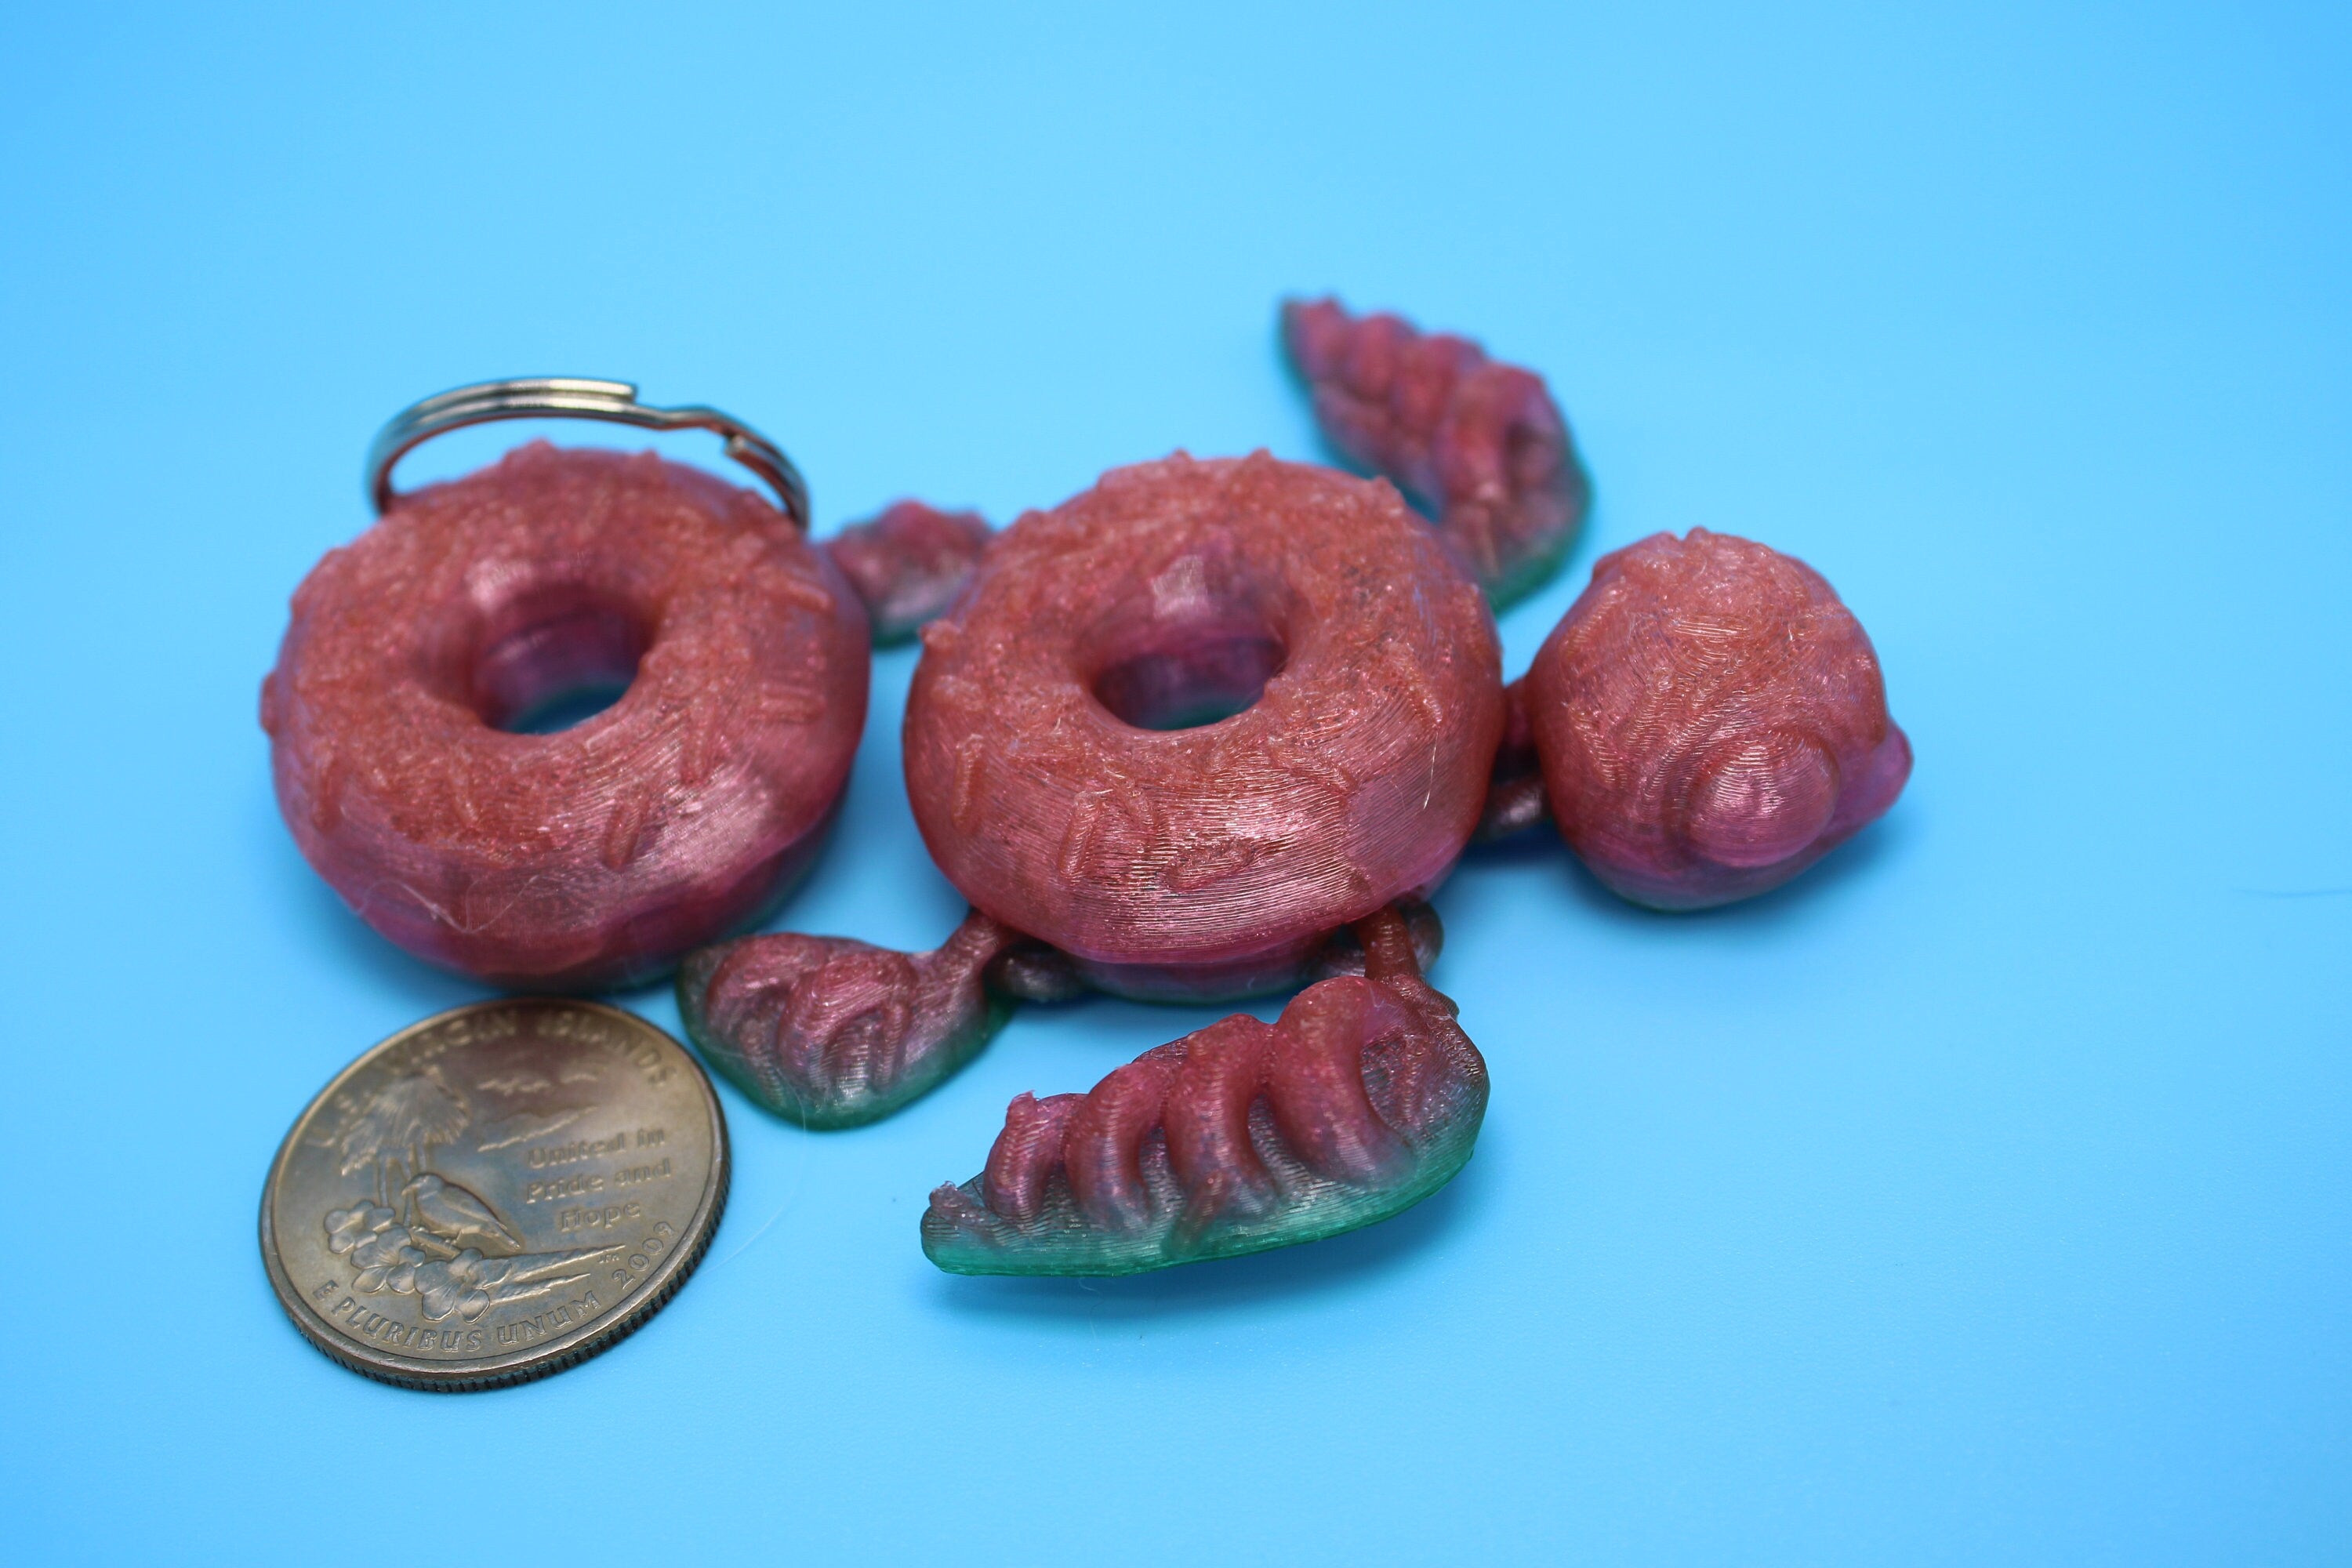 Turtle - Doughnut Turtle | Miniature (Donurtle) | 3D Printed TPU | Flexi Fidget Turtle | Desk Fidget Toy.